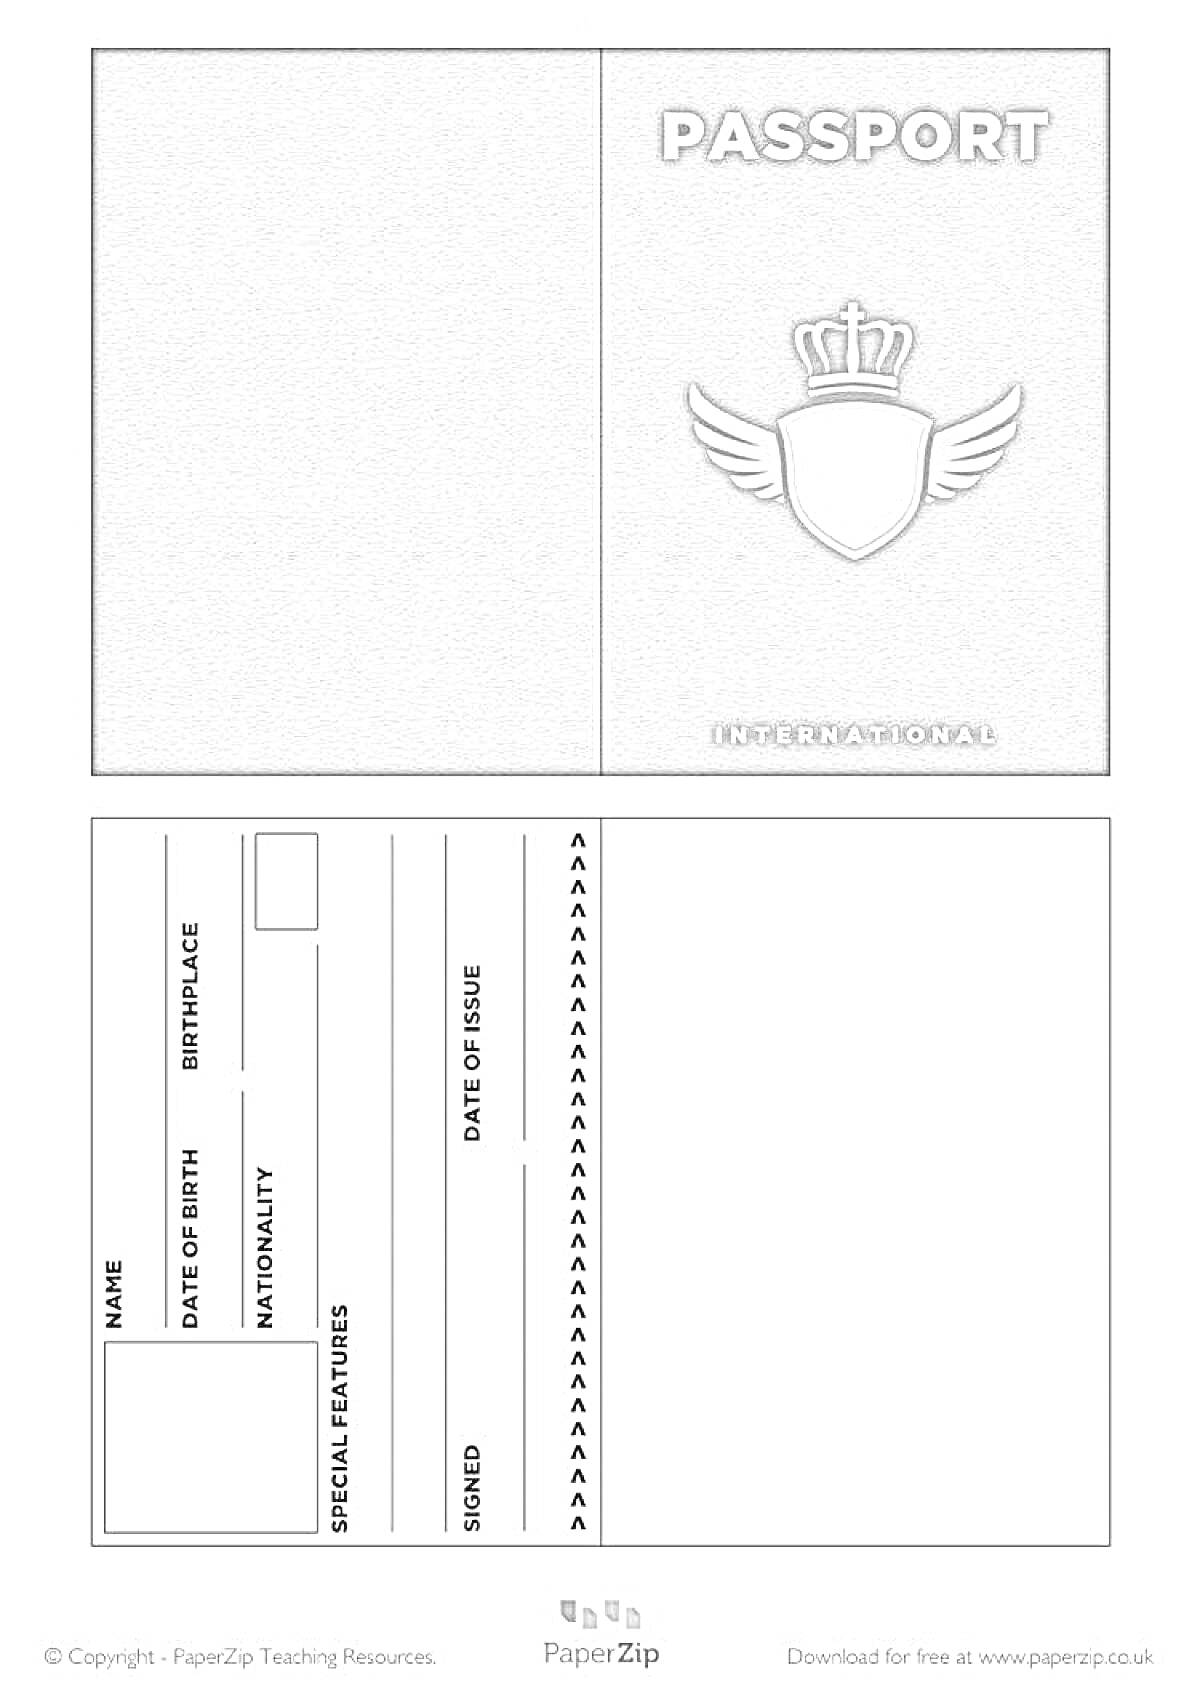 Раскраска Раскраска с изображением детского паспорта, включающая обложку с изображением короны и эмблемы с крыльями, а также внутреннюю страницу с полями для имени, даты рождения, национальности, особых примет, даты выпуска и подписи.